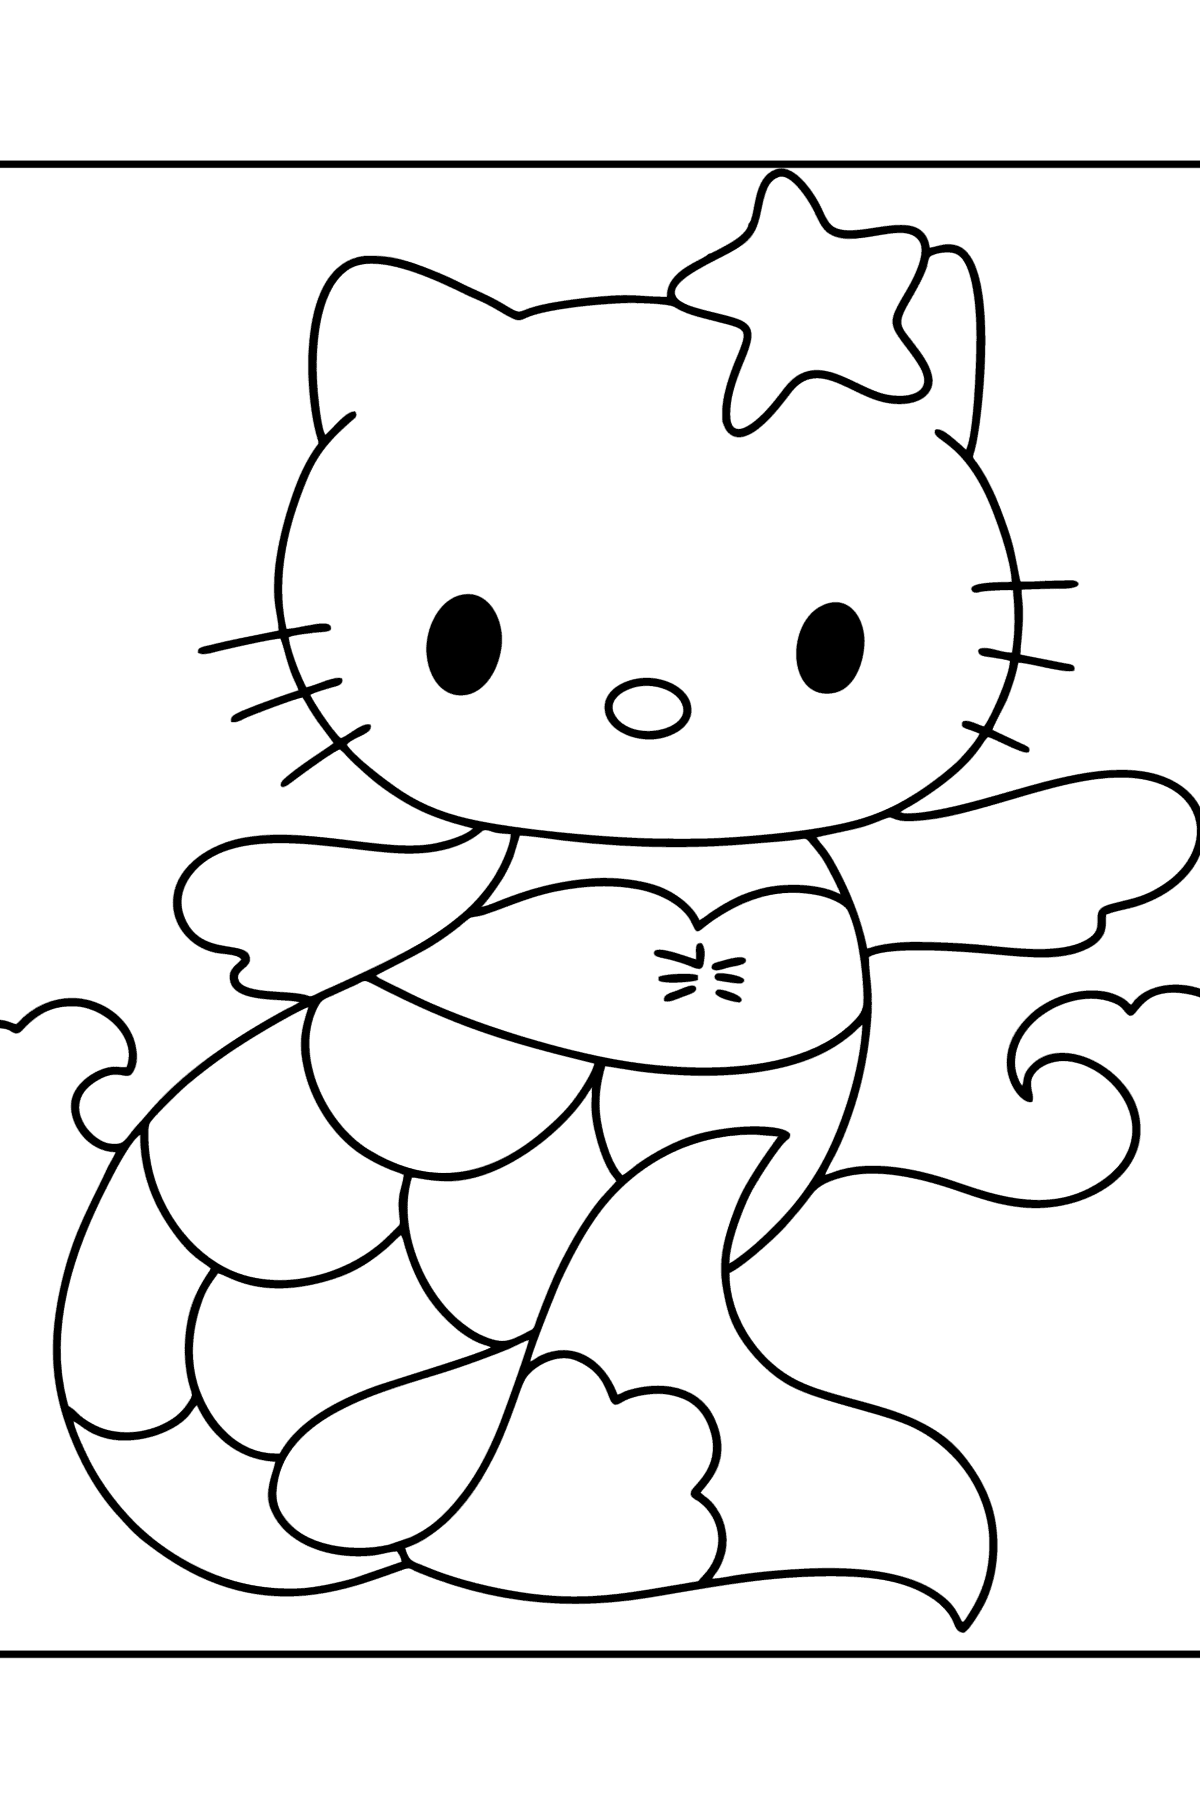 Tegning til farvning Hello Kitty havfrue - Tegninger til farvelægning for børn